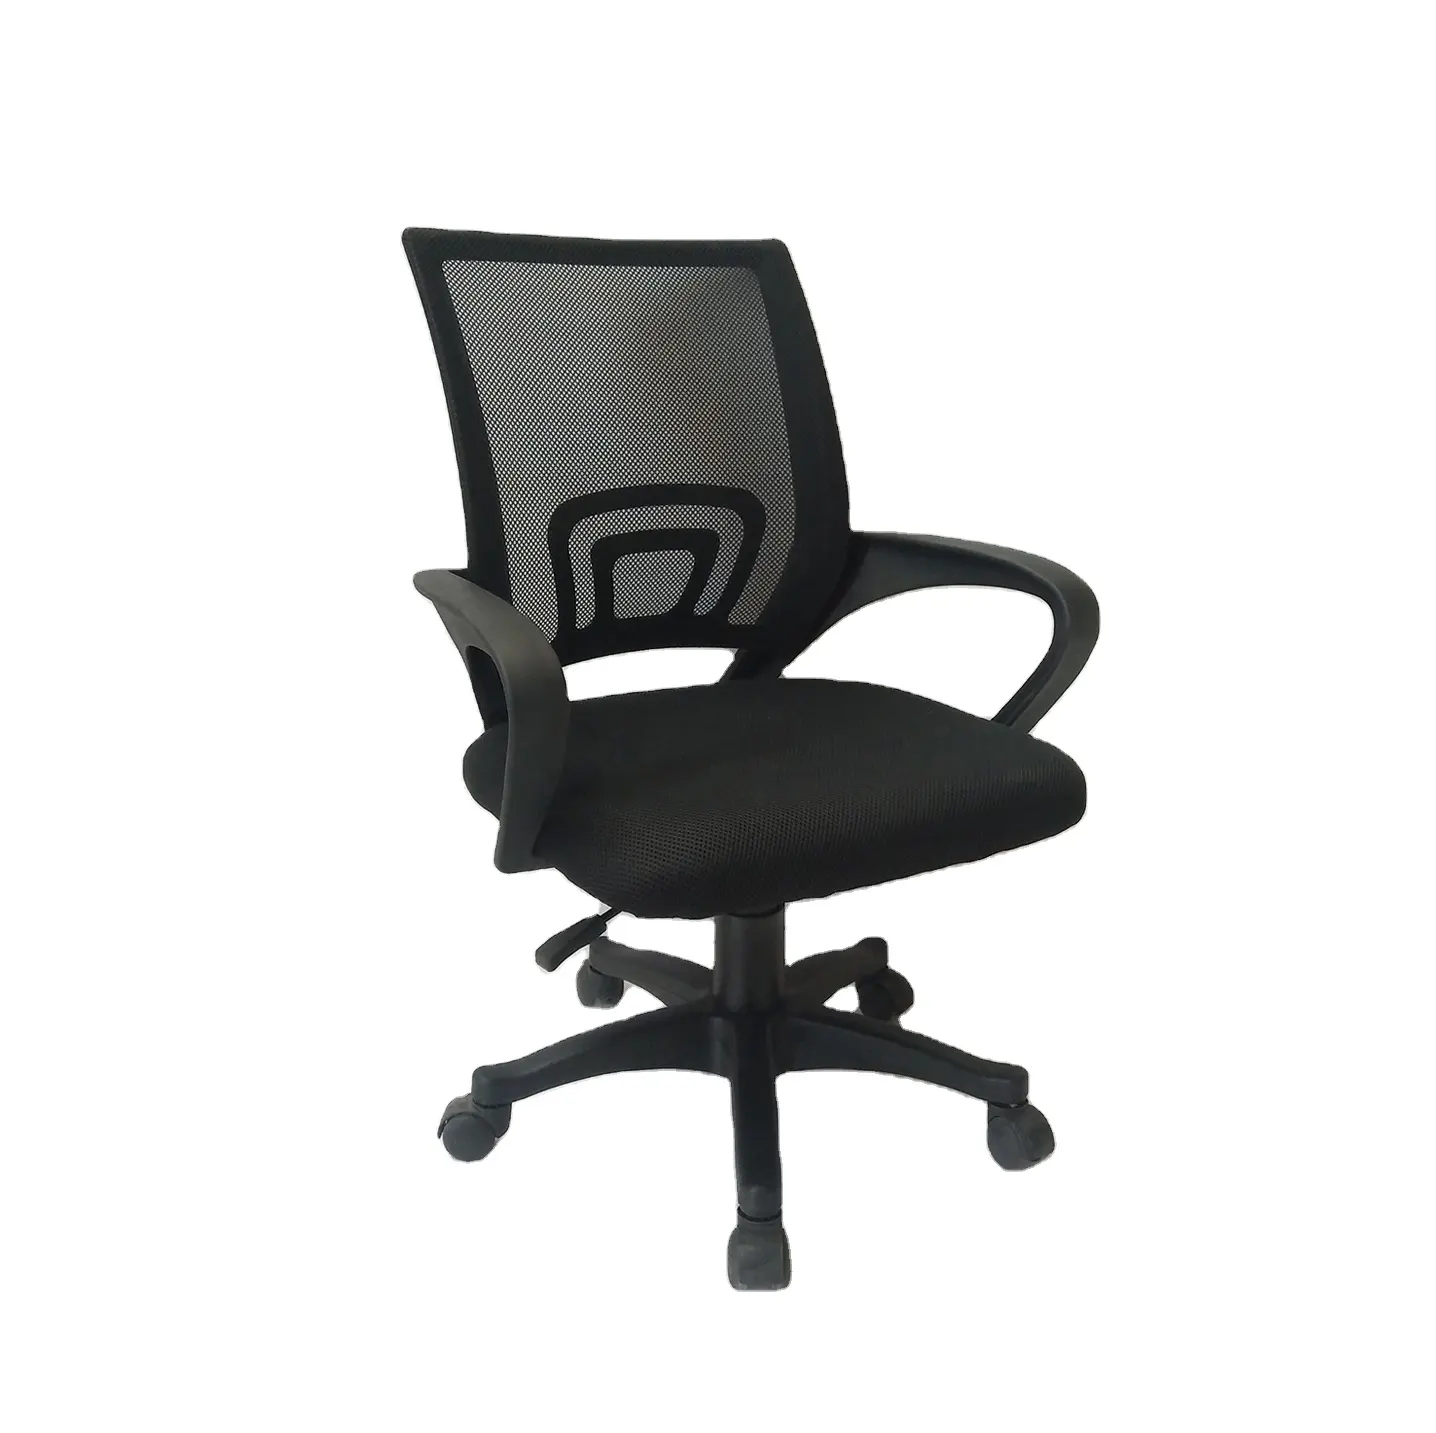 Muebles comerciales giratorios para silla de oficina, silla de oficina giratoria de malla ergonómica negra, silla de escritorio para ordenador